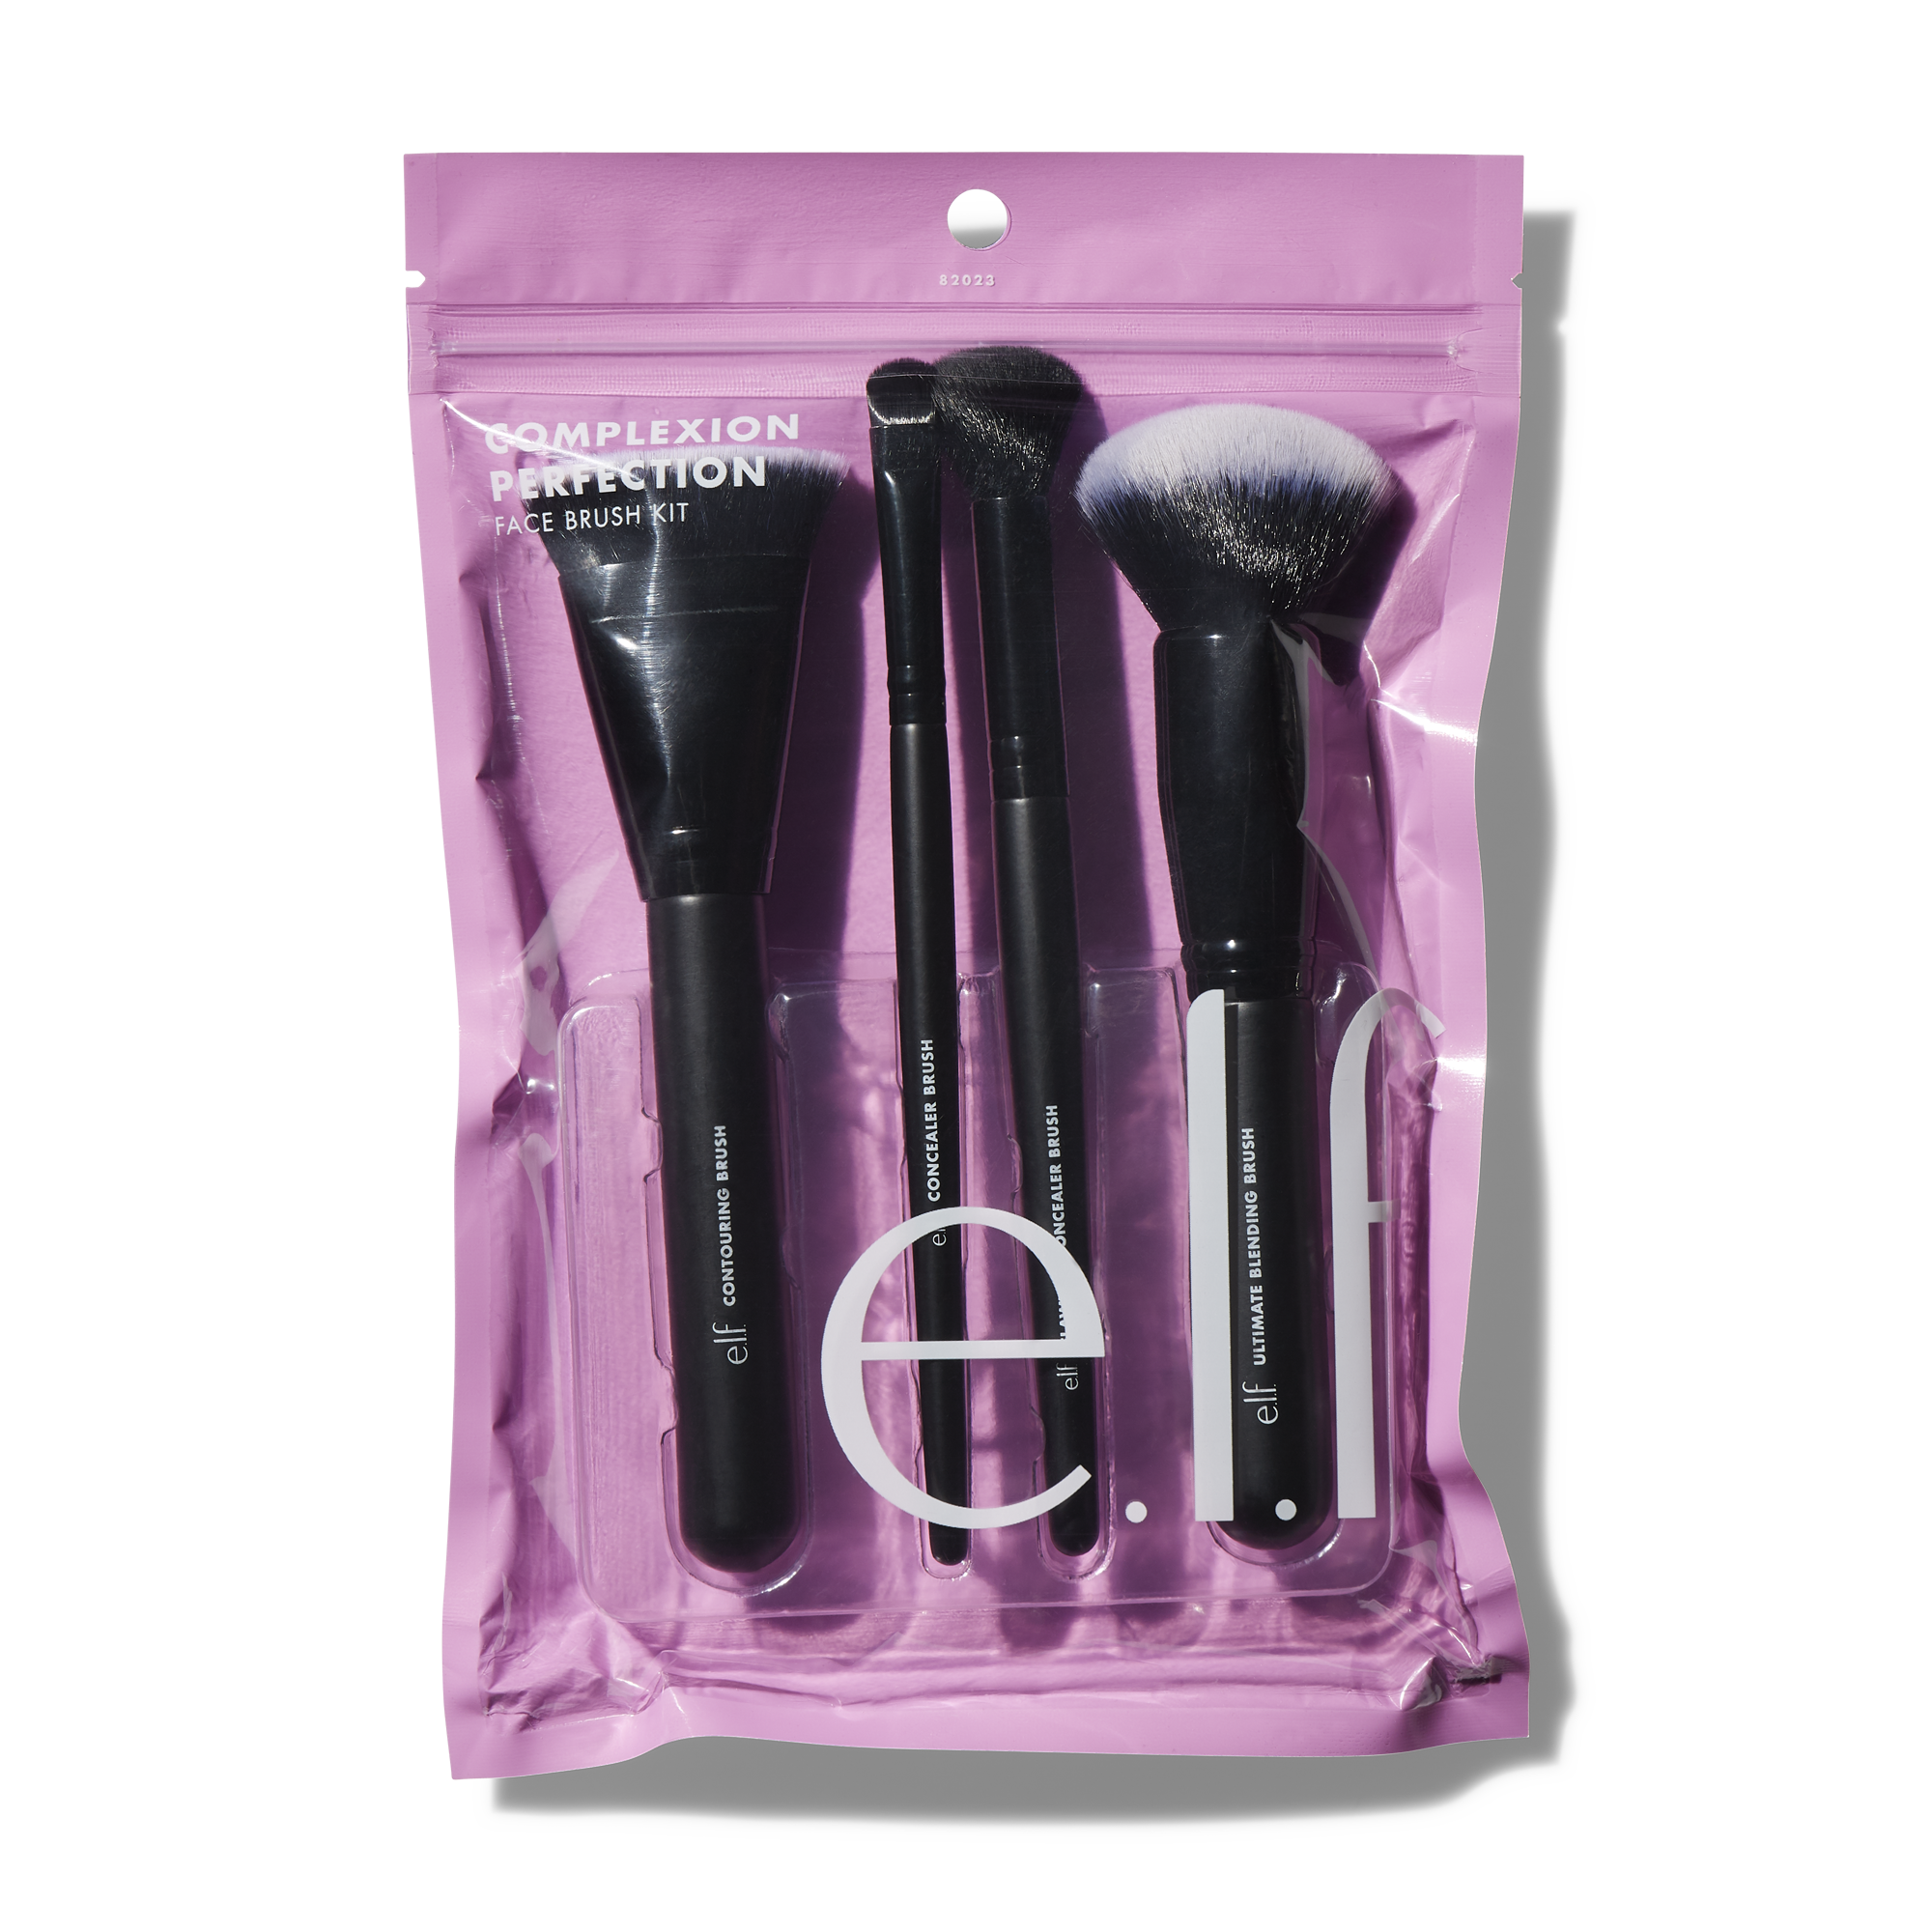 Blending Brush E.L.F., Cosmetic Tools & More